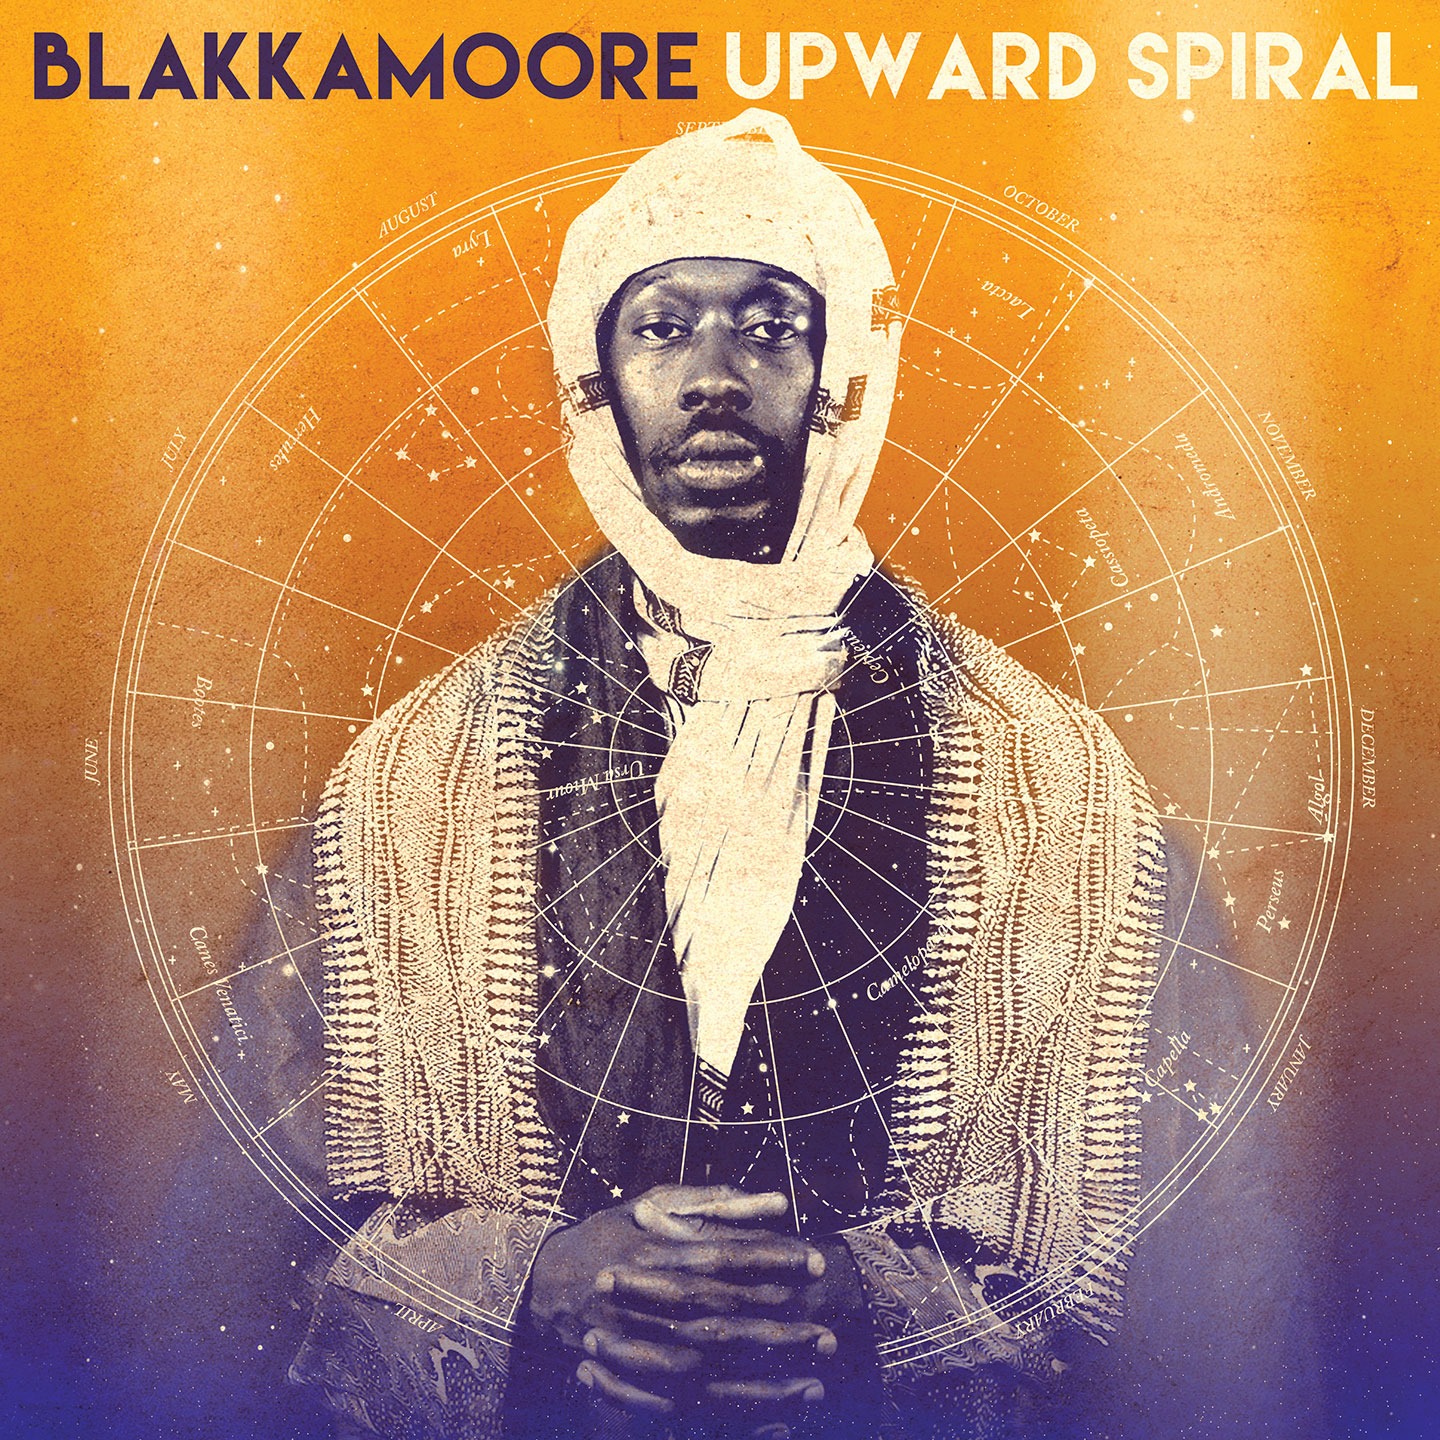 Cover de l'album de Blakkamoore - Upward Spiral. Réalisé par Loseou